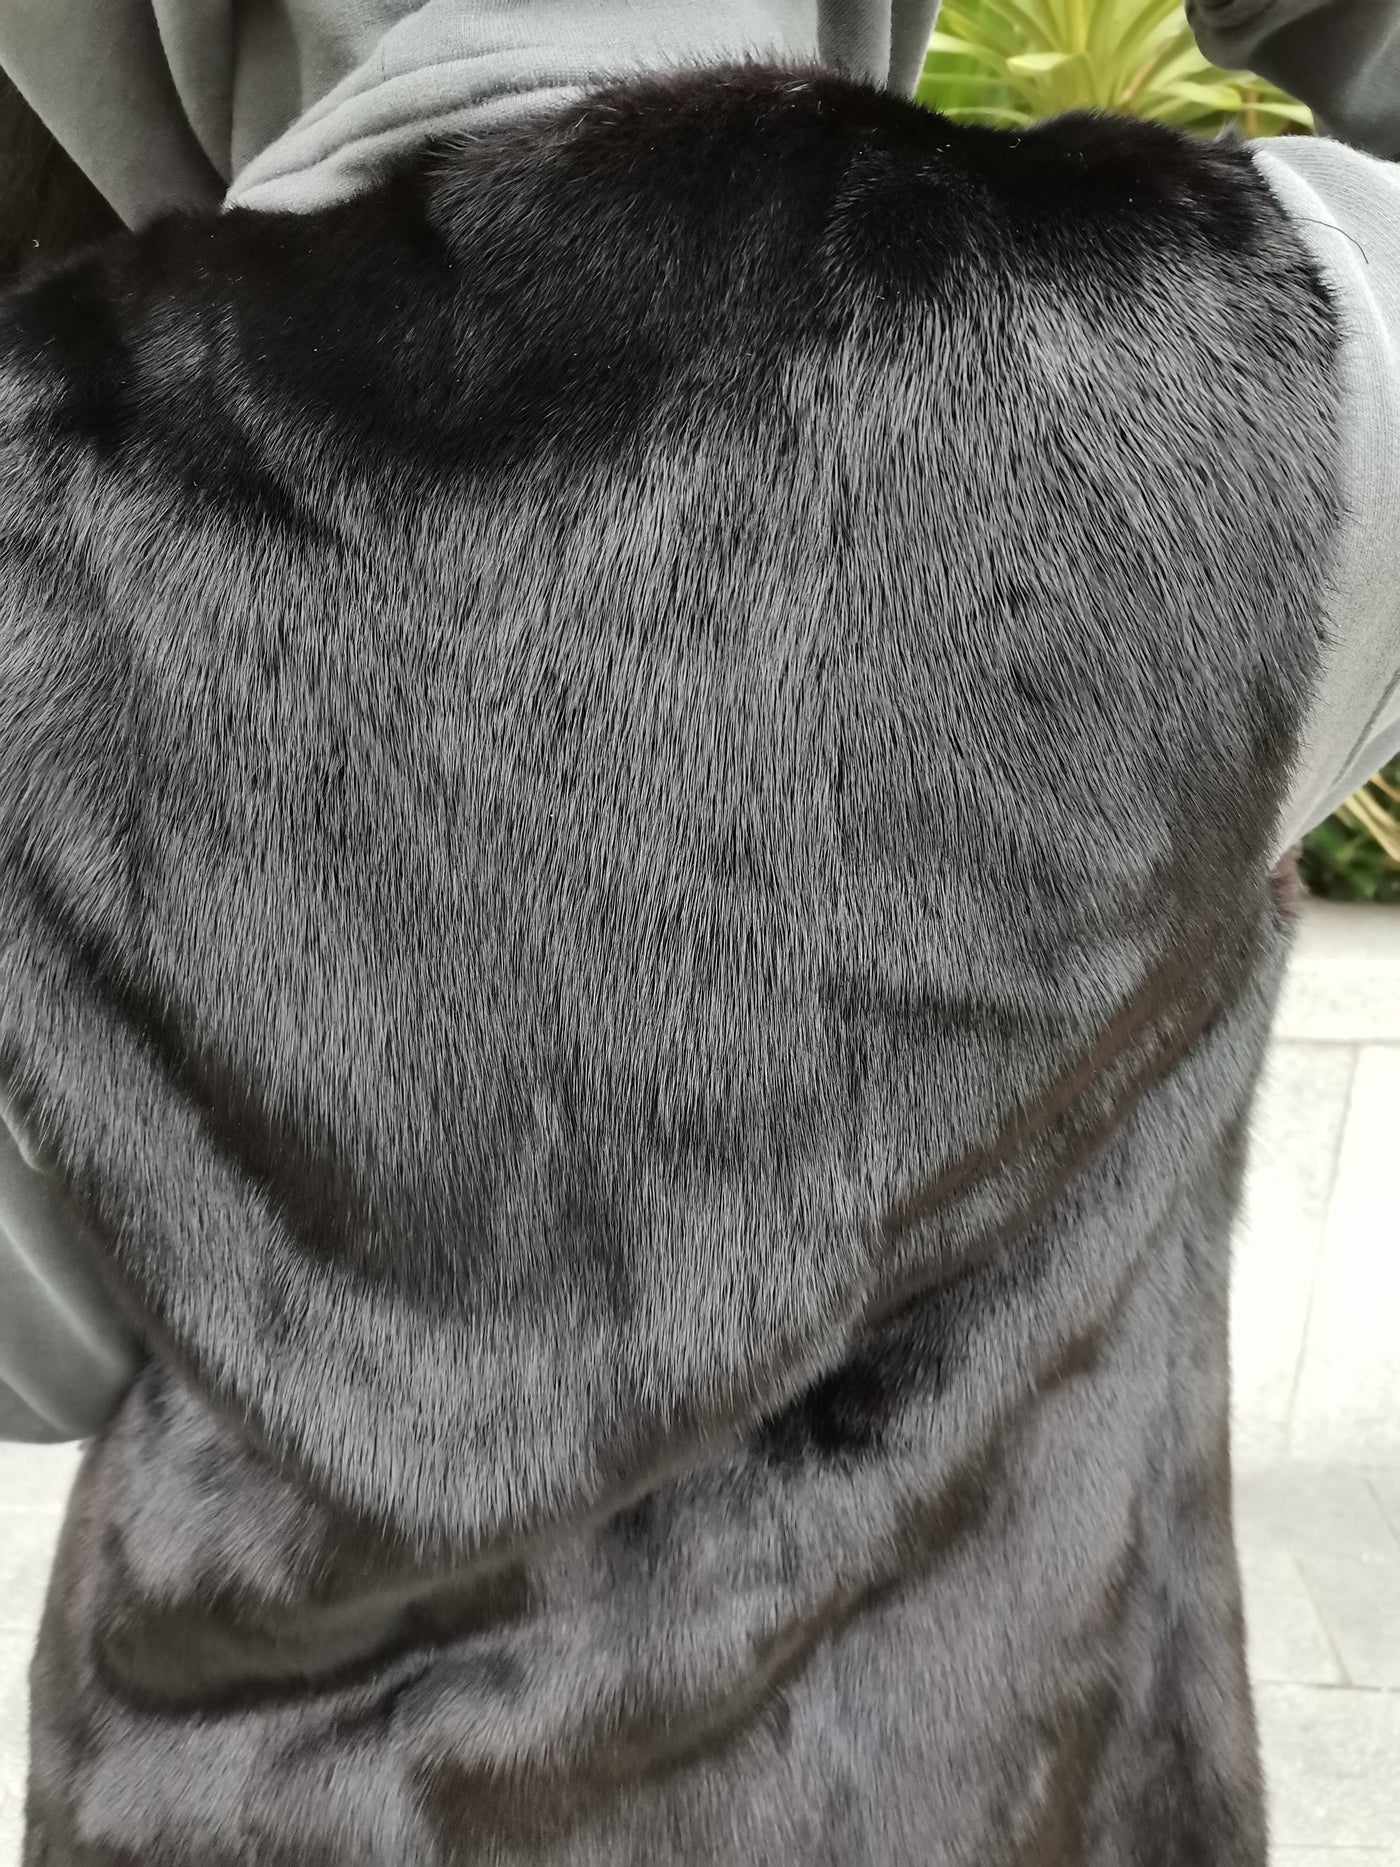 HARRODS black mink fur gilet size 34